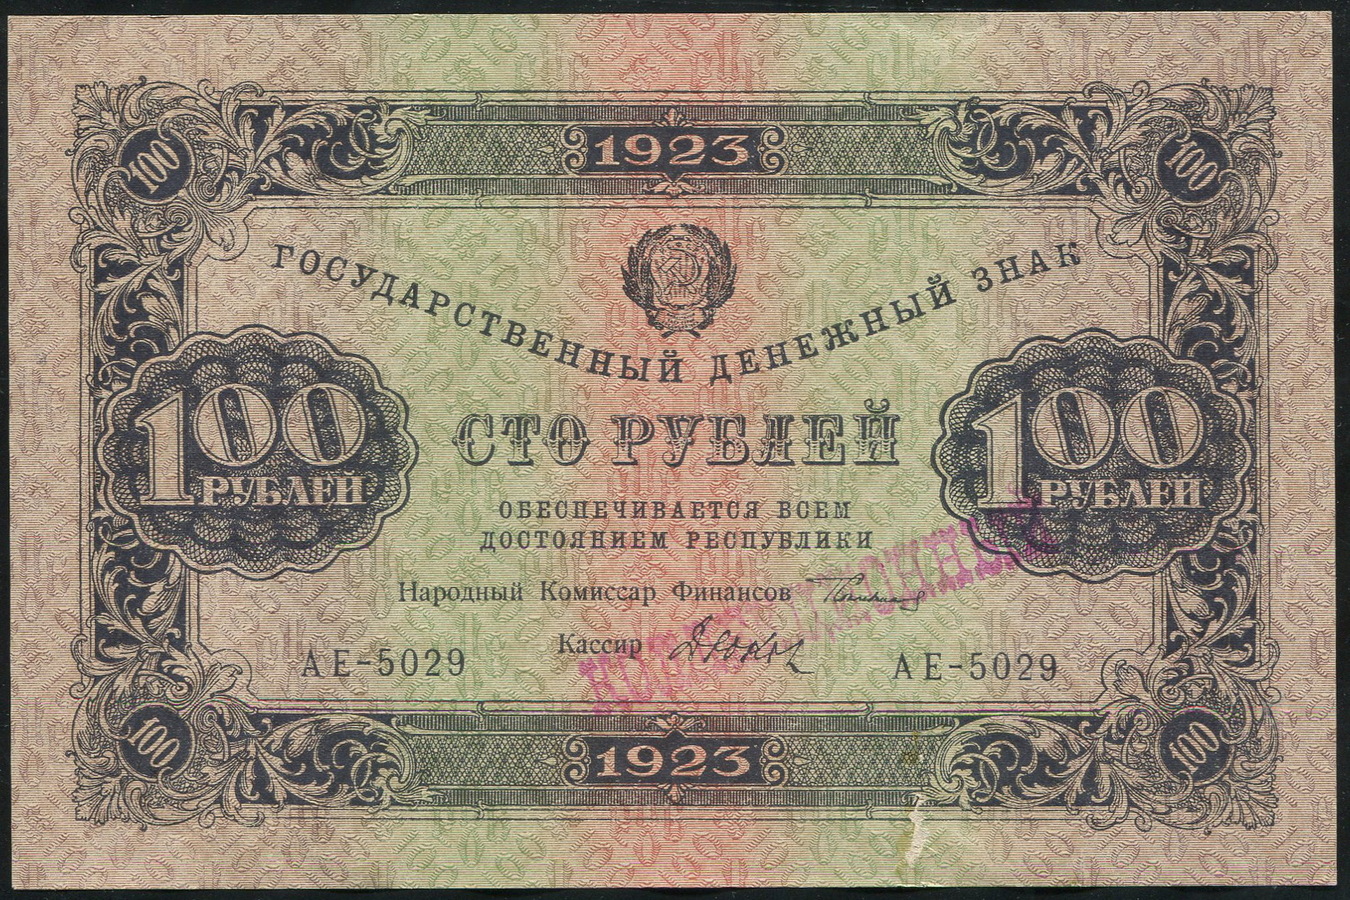 100 рублей 1923